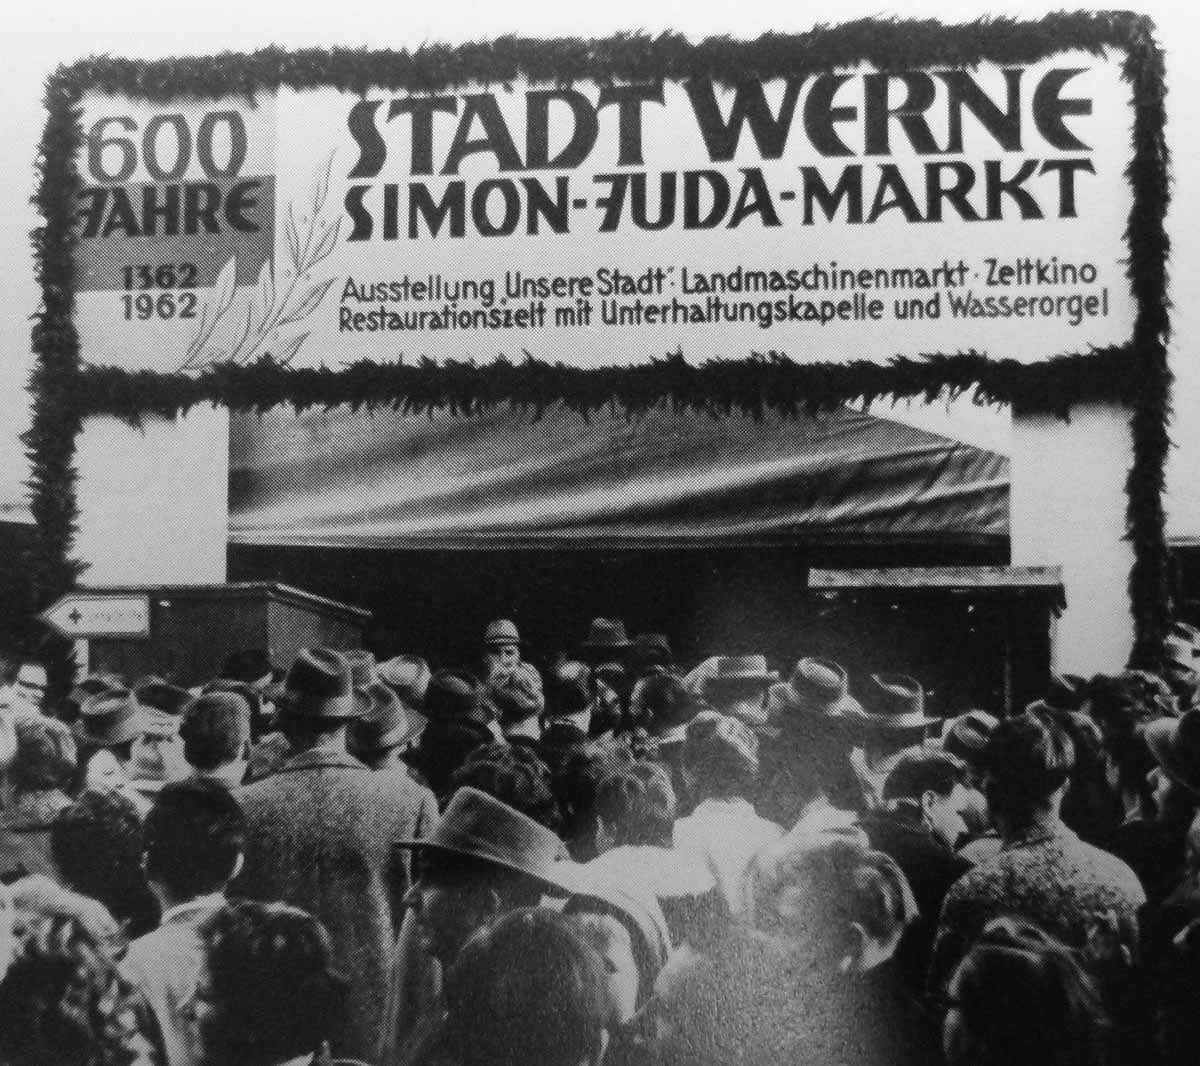 Durch diesen geschmückten Zelteingang drängten sich während der vier Kirmestage 1962 Tausende von Besuchern. Foto: Archiv Sim-Jü-Verlag